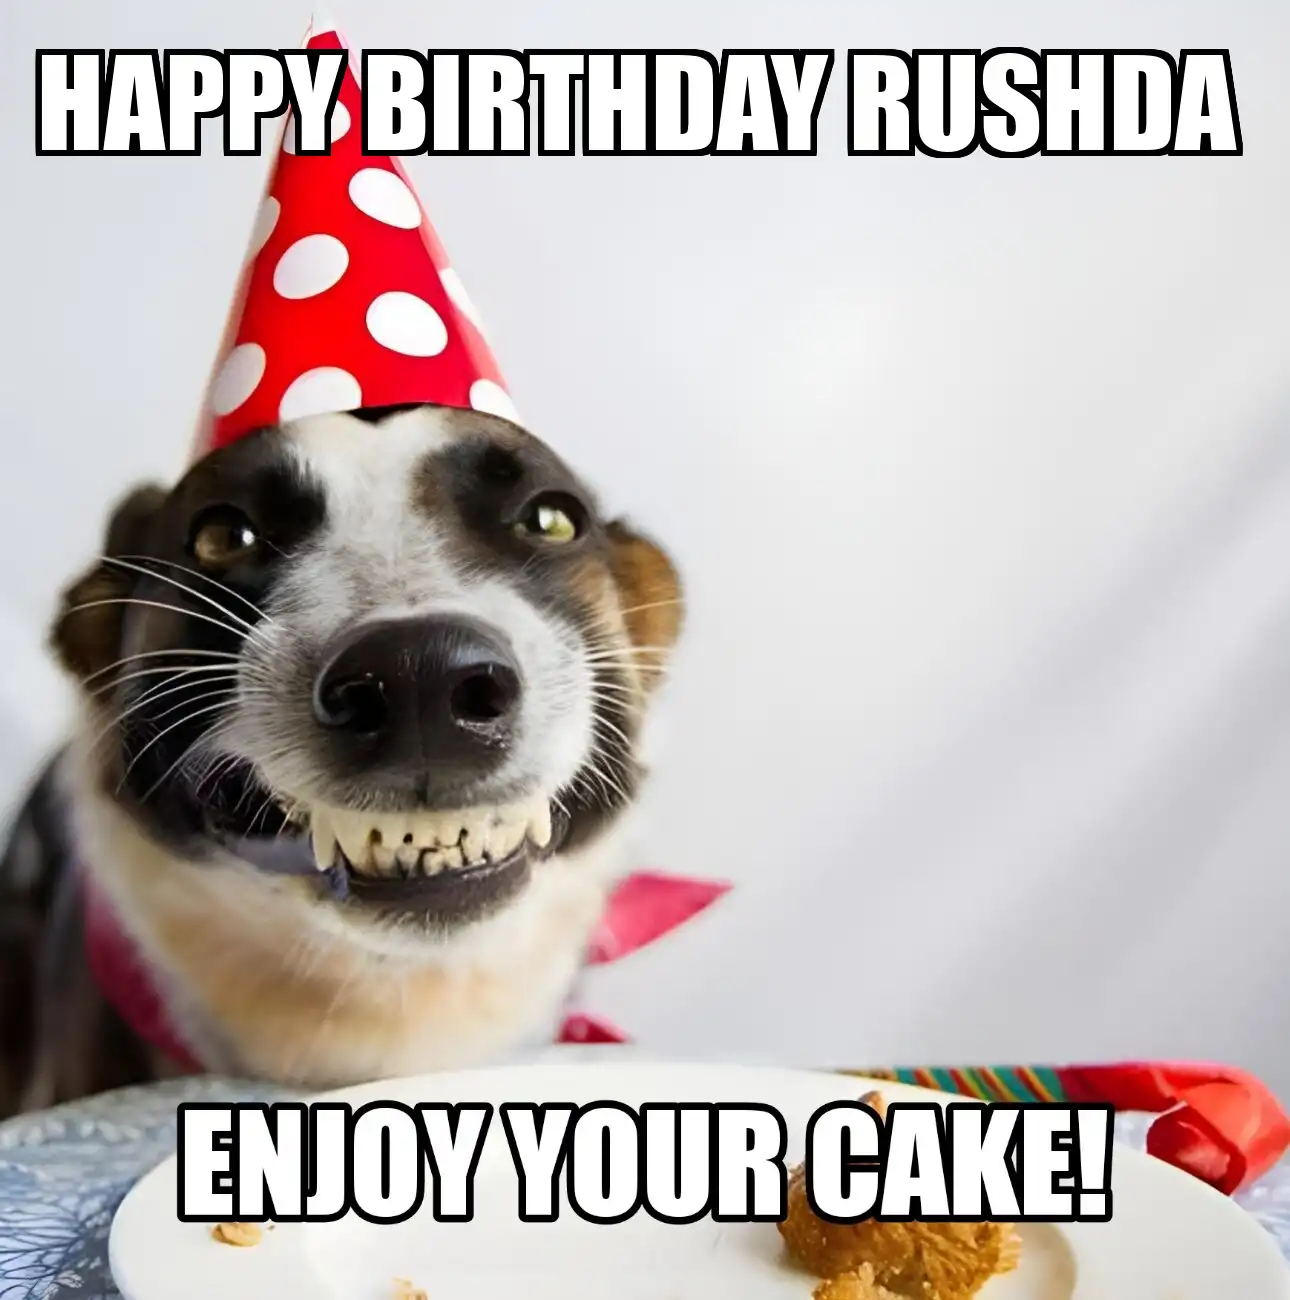 Happy Birthday Rushda Enjoy Your Cake Dog Meme